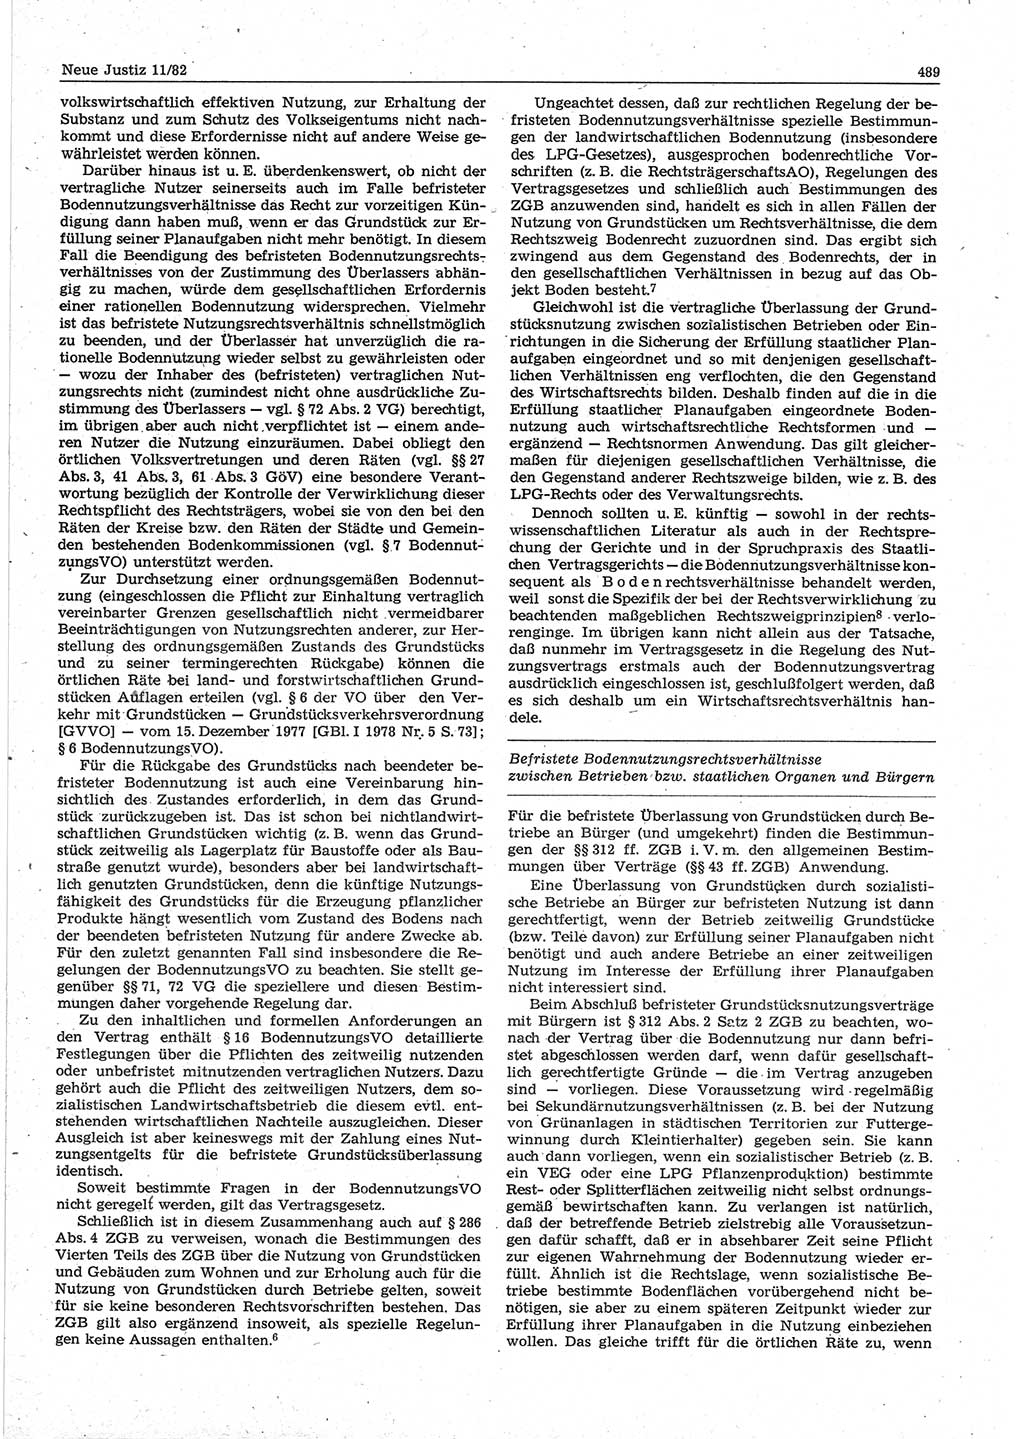 Neue Justiz (NJ), Zeitschrift für sozialistisches Recht und Gesetzlichkeit [Deutsche Demokratische Republik (DDR)], 36. Jahrgang 1982, Seite 489 (NJ DDR 1982, S. 489)